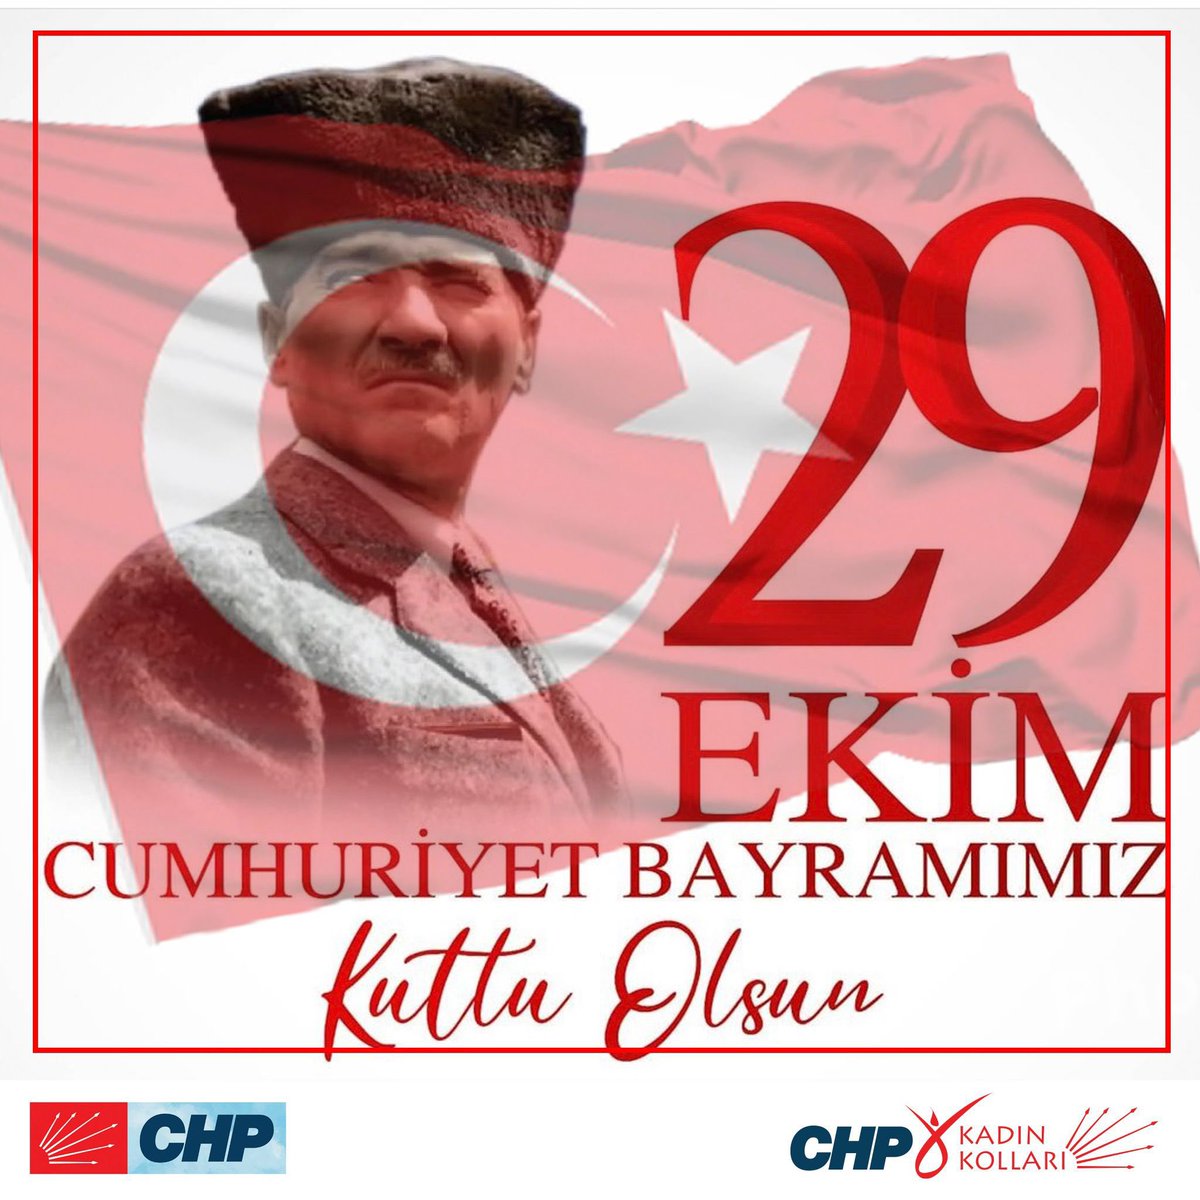 Cumhuriyet bir kadın devrimidir! #29EkimCumhuriyetBayramımız kutlu olsun. Cumhuriyetimizin ikinci yüzyılını demokrasi ile taçandırmaya and içtik. Ulu önderimiz Gazi Mustafa Kemal #Atatürk ve silah arkadaşlarını saygıyla,minnetle anıyoruz. YAŞASIN CUMHURİYET! 🇹🇷